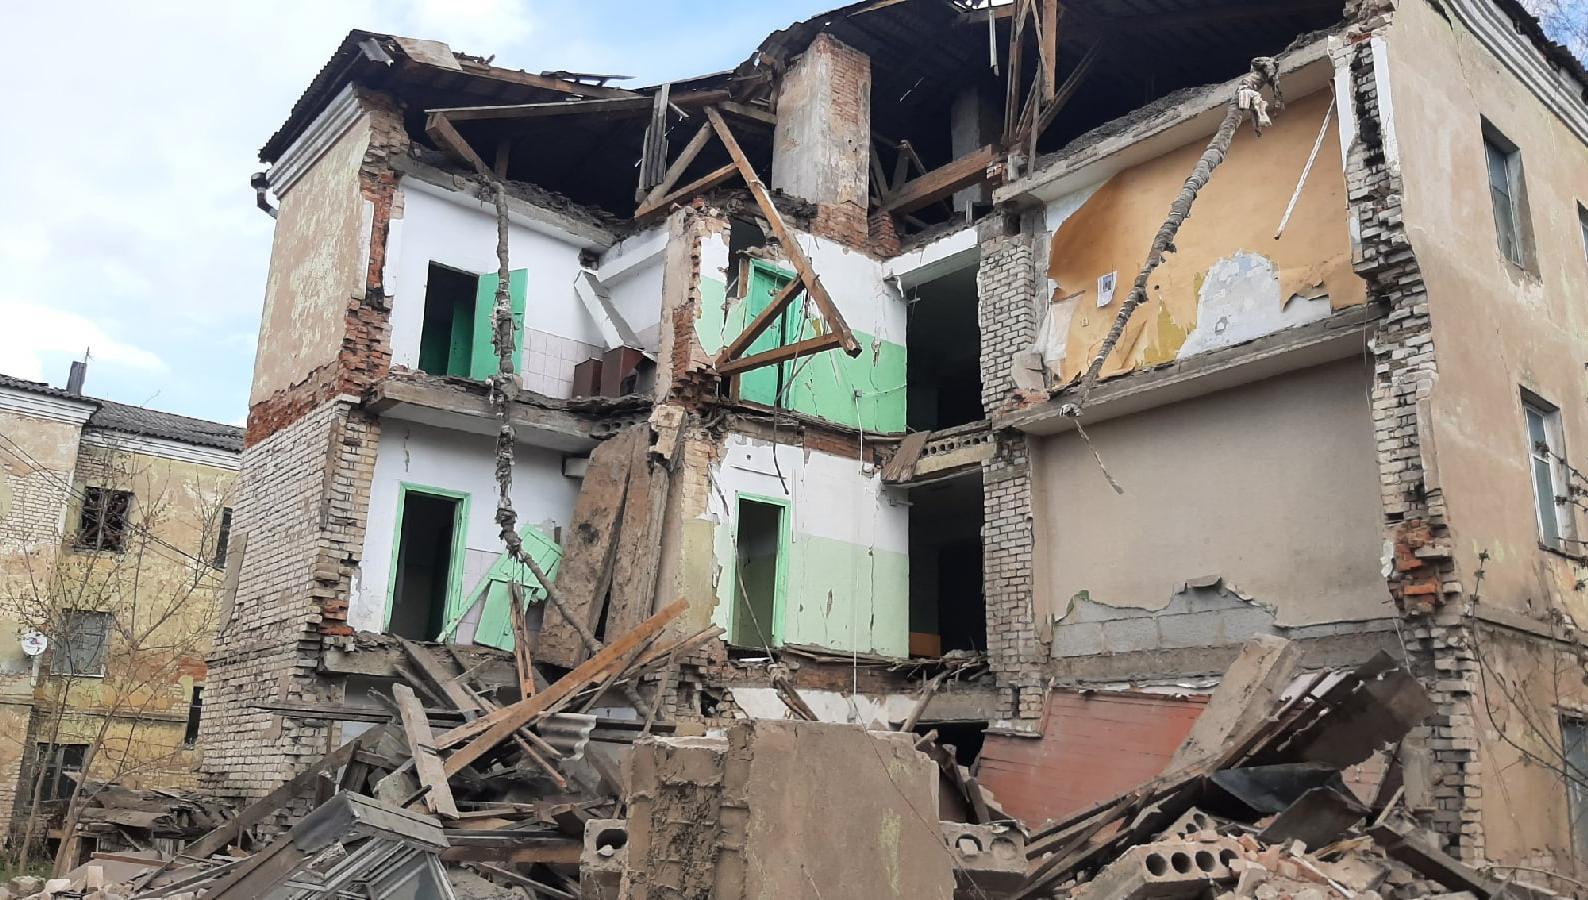 Средства на демонтаж общежития, обрушившегося в Ржеве Тверской области, выделили из областного бюджета